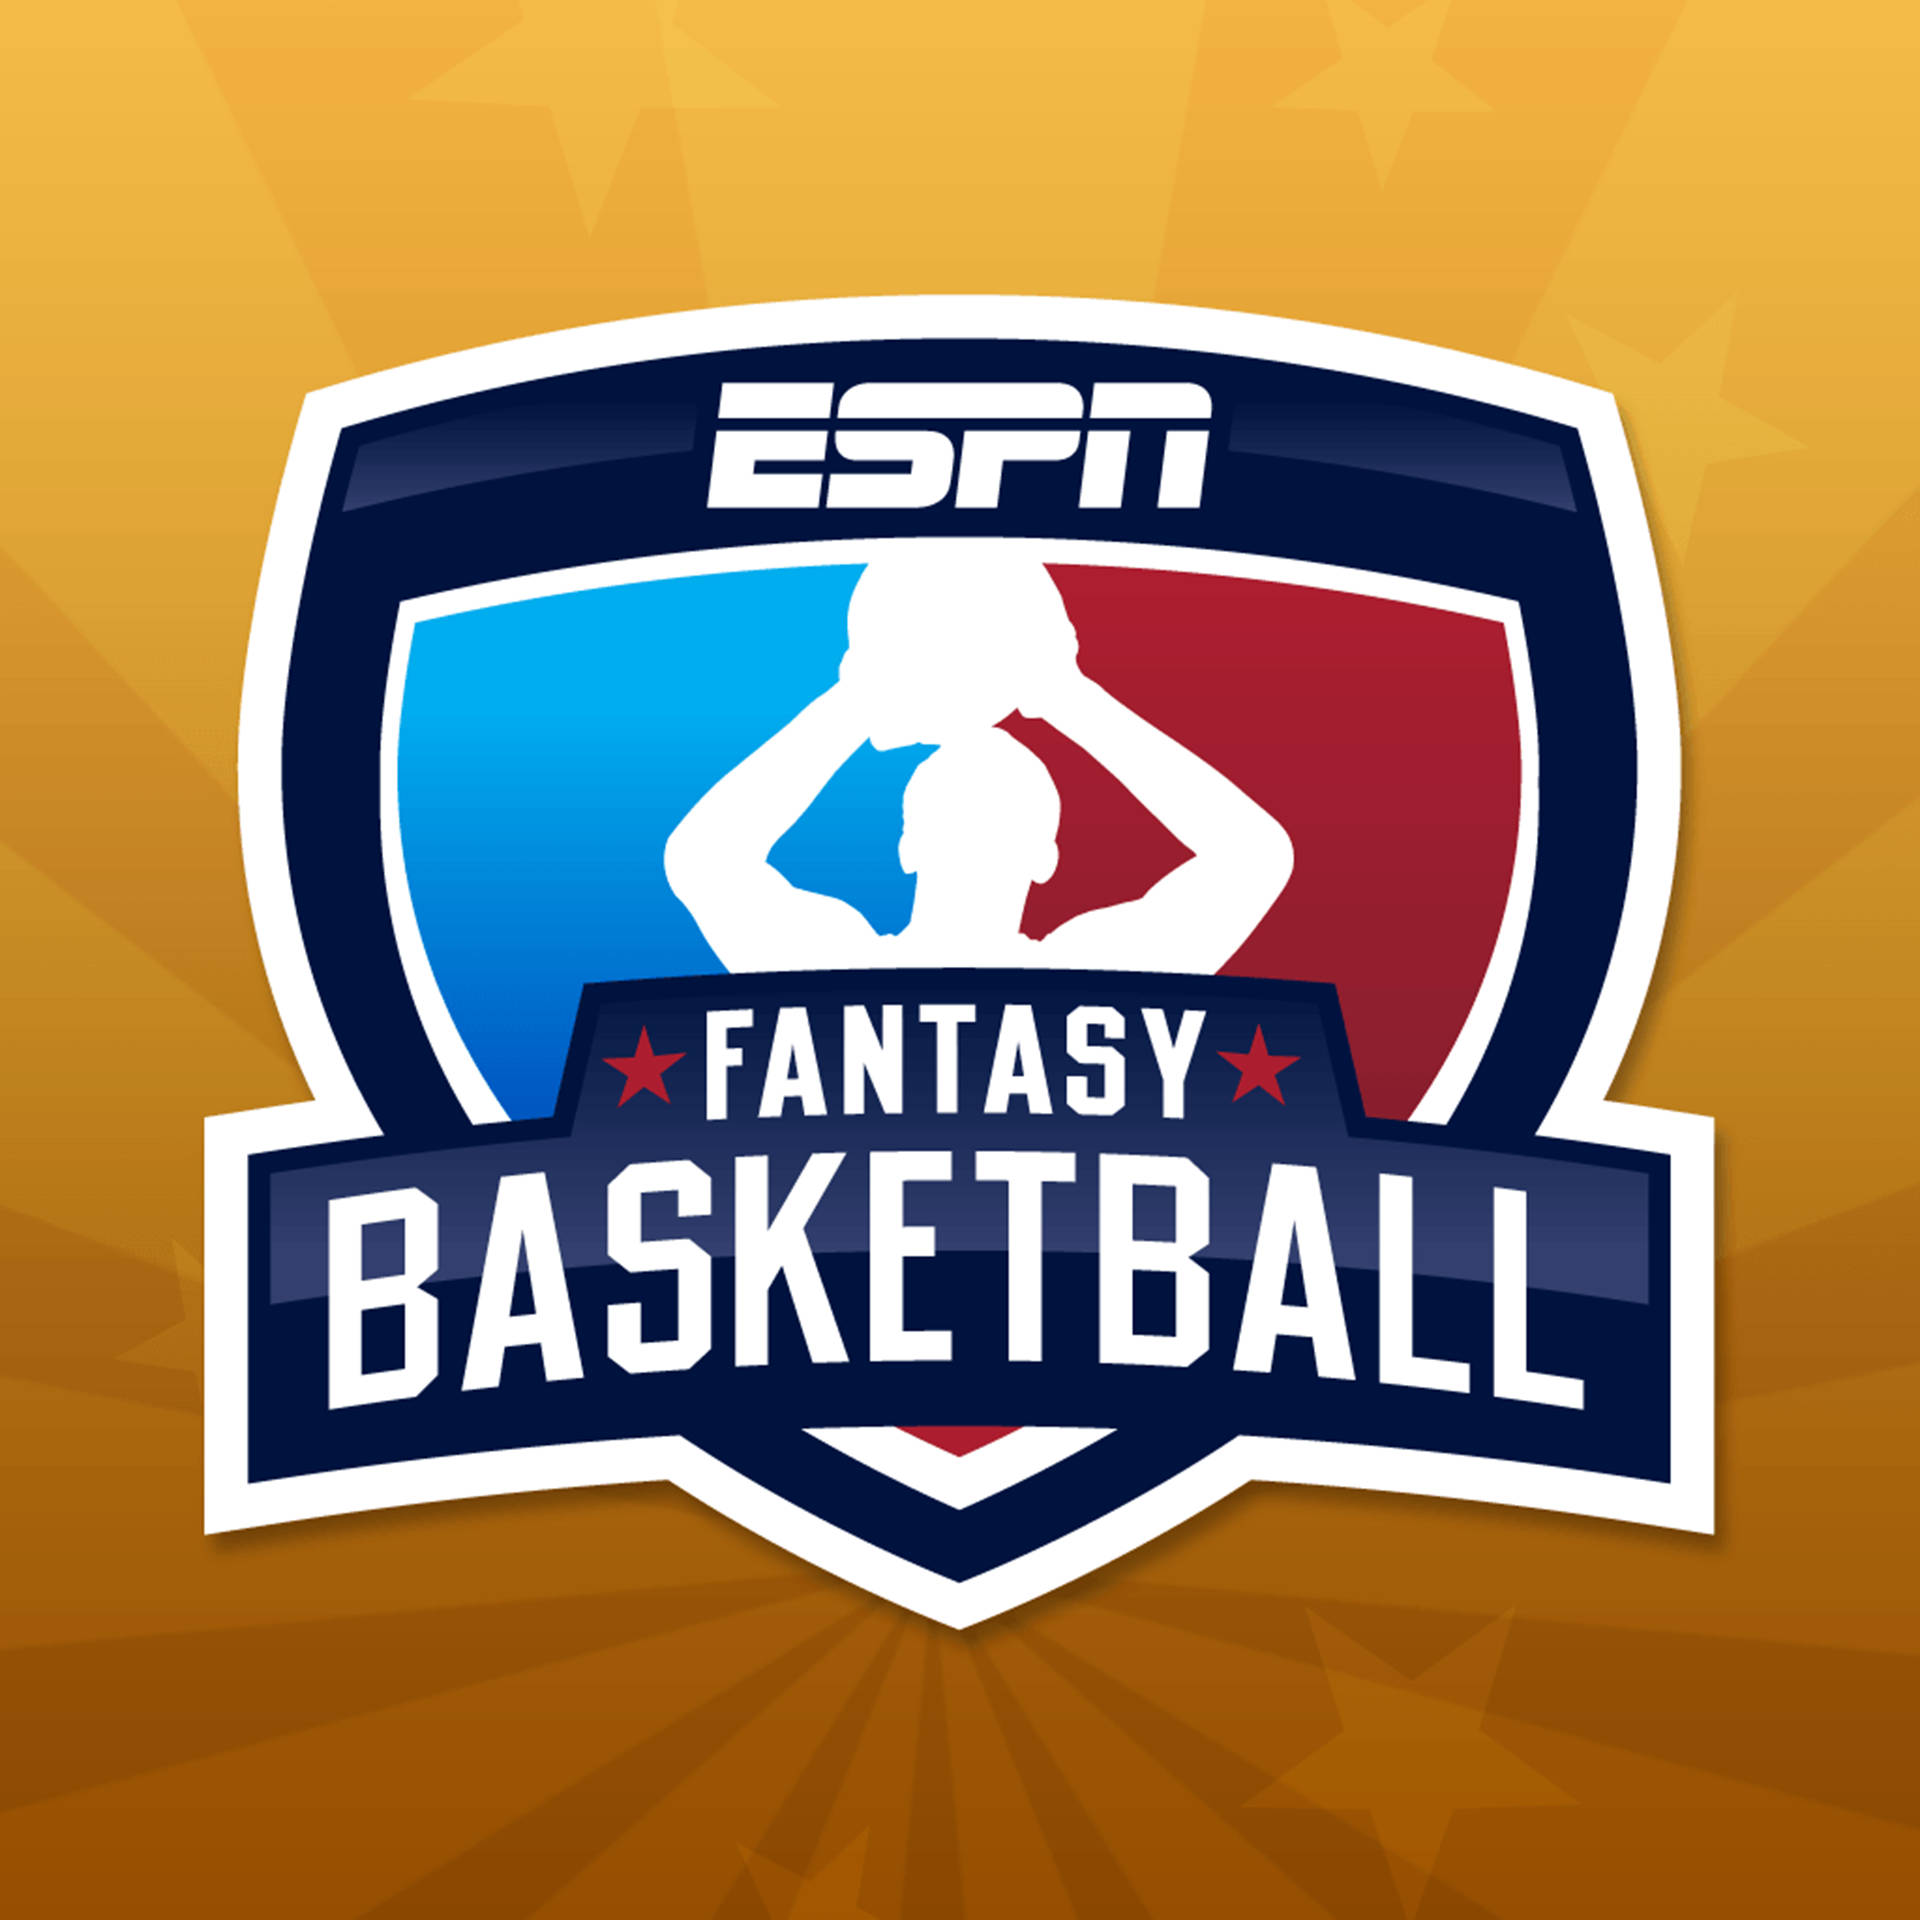 ESPN Fantasy Basketball Wallpaper